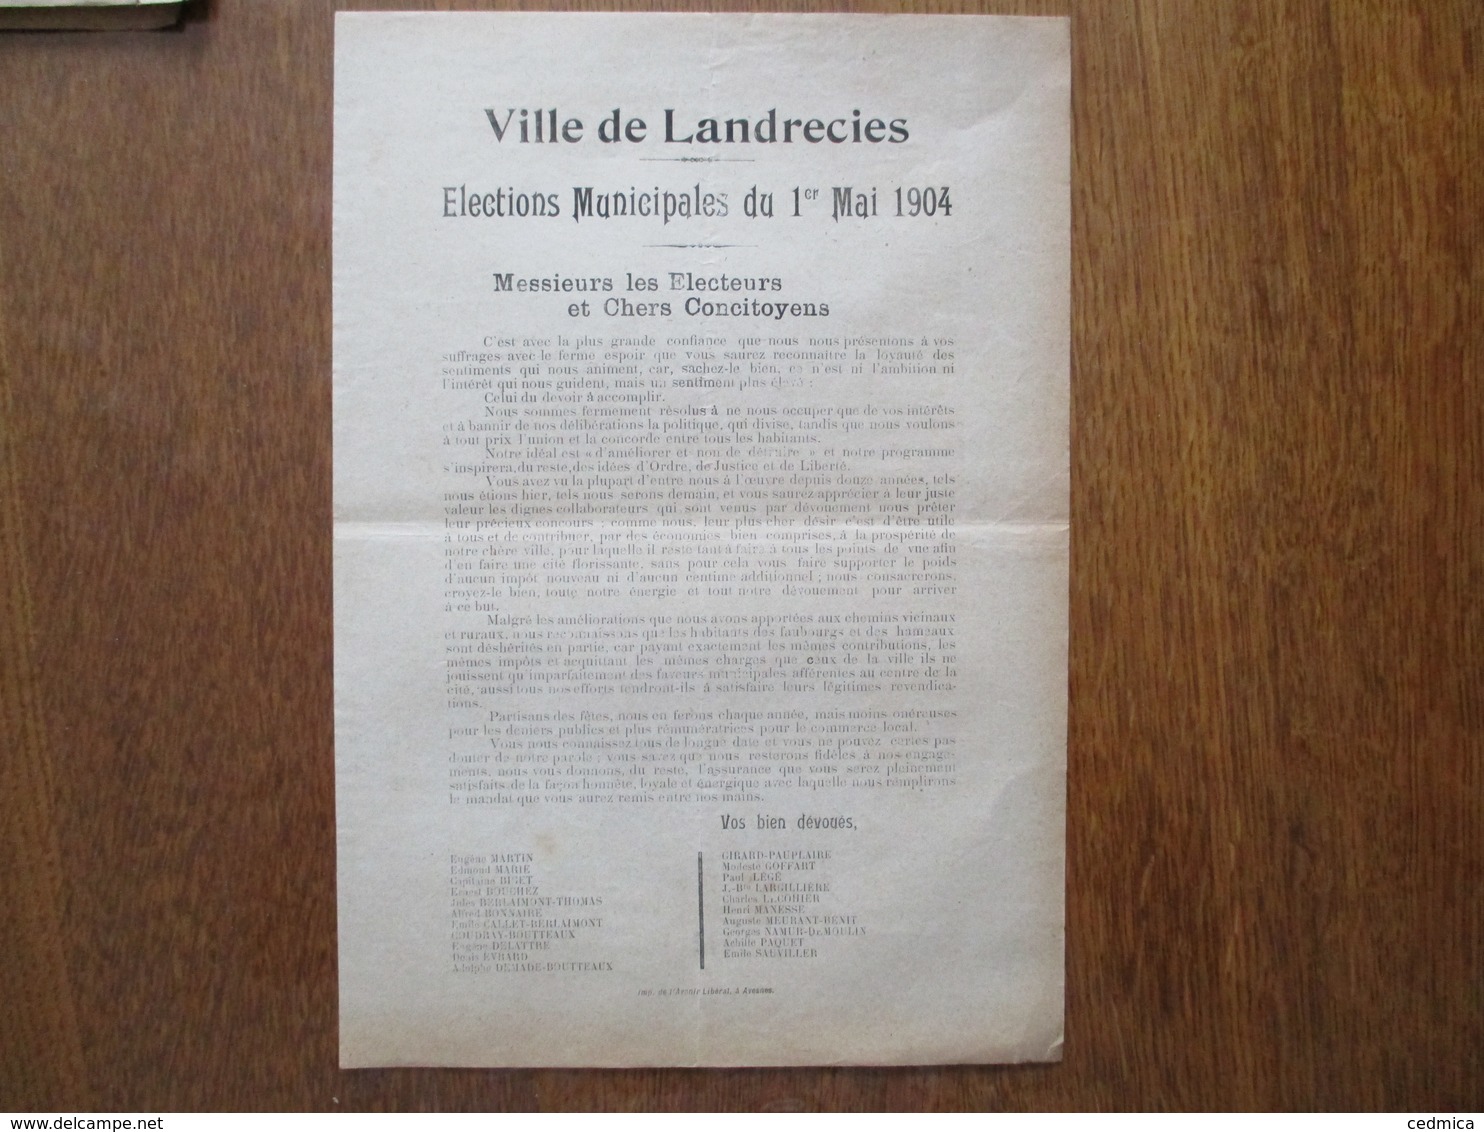 LANDRECIES ELECTIONS MUNICIPALES DU 1er MAI 1904 TRACT VOS BIENS DEVOUES EUGENE MARTIN,EDMOND MARIE,CAPITAINE BISET..... - Documents Historiques